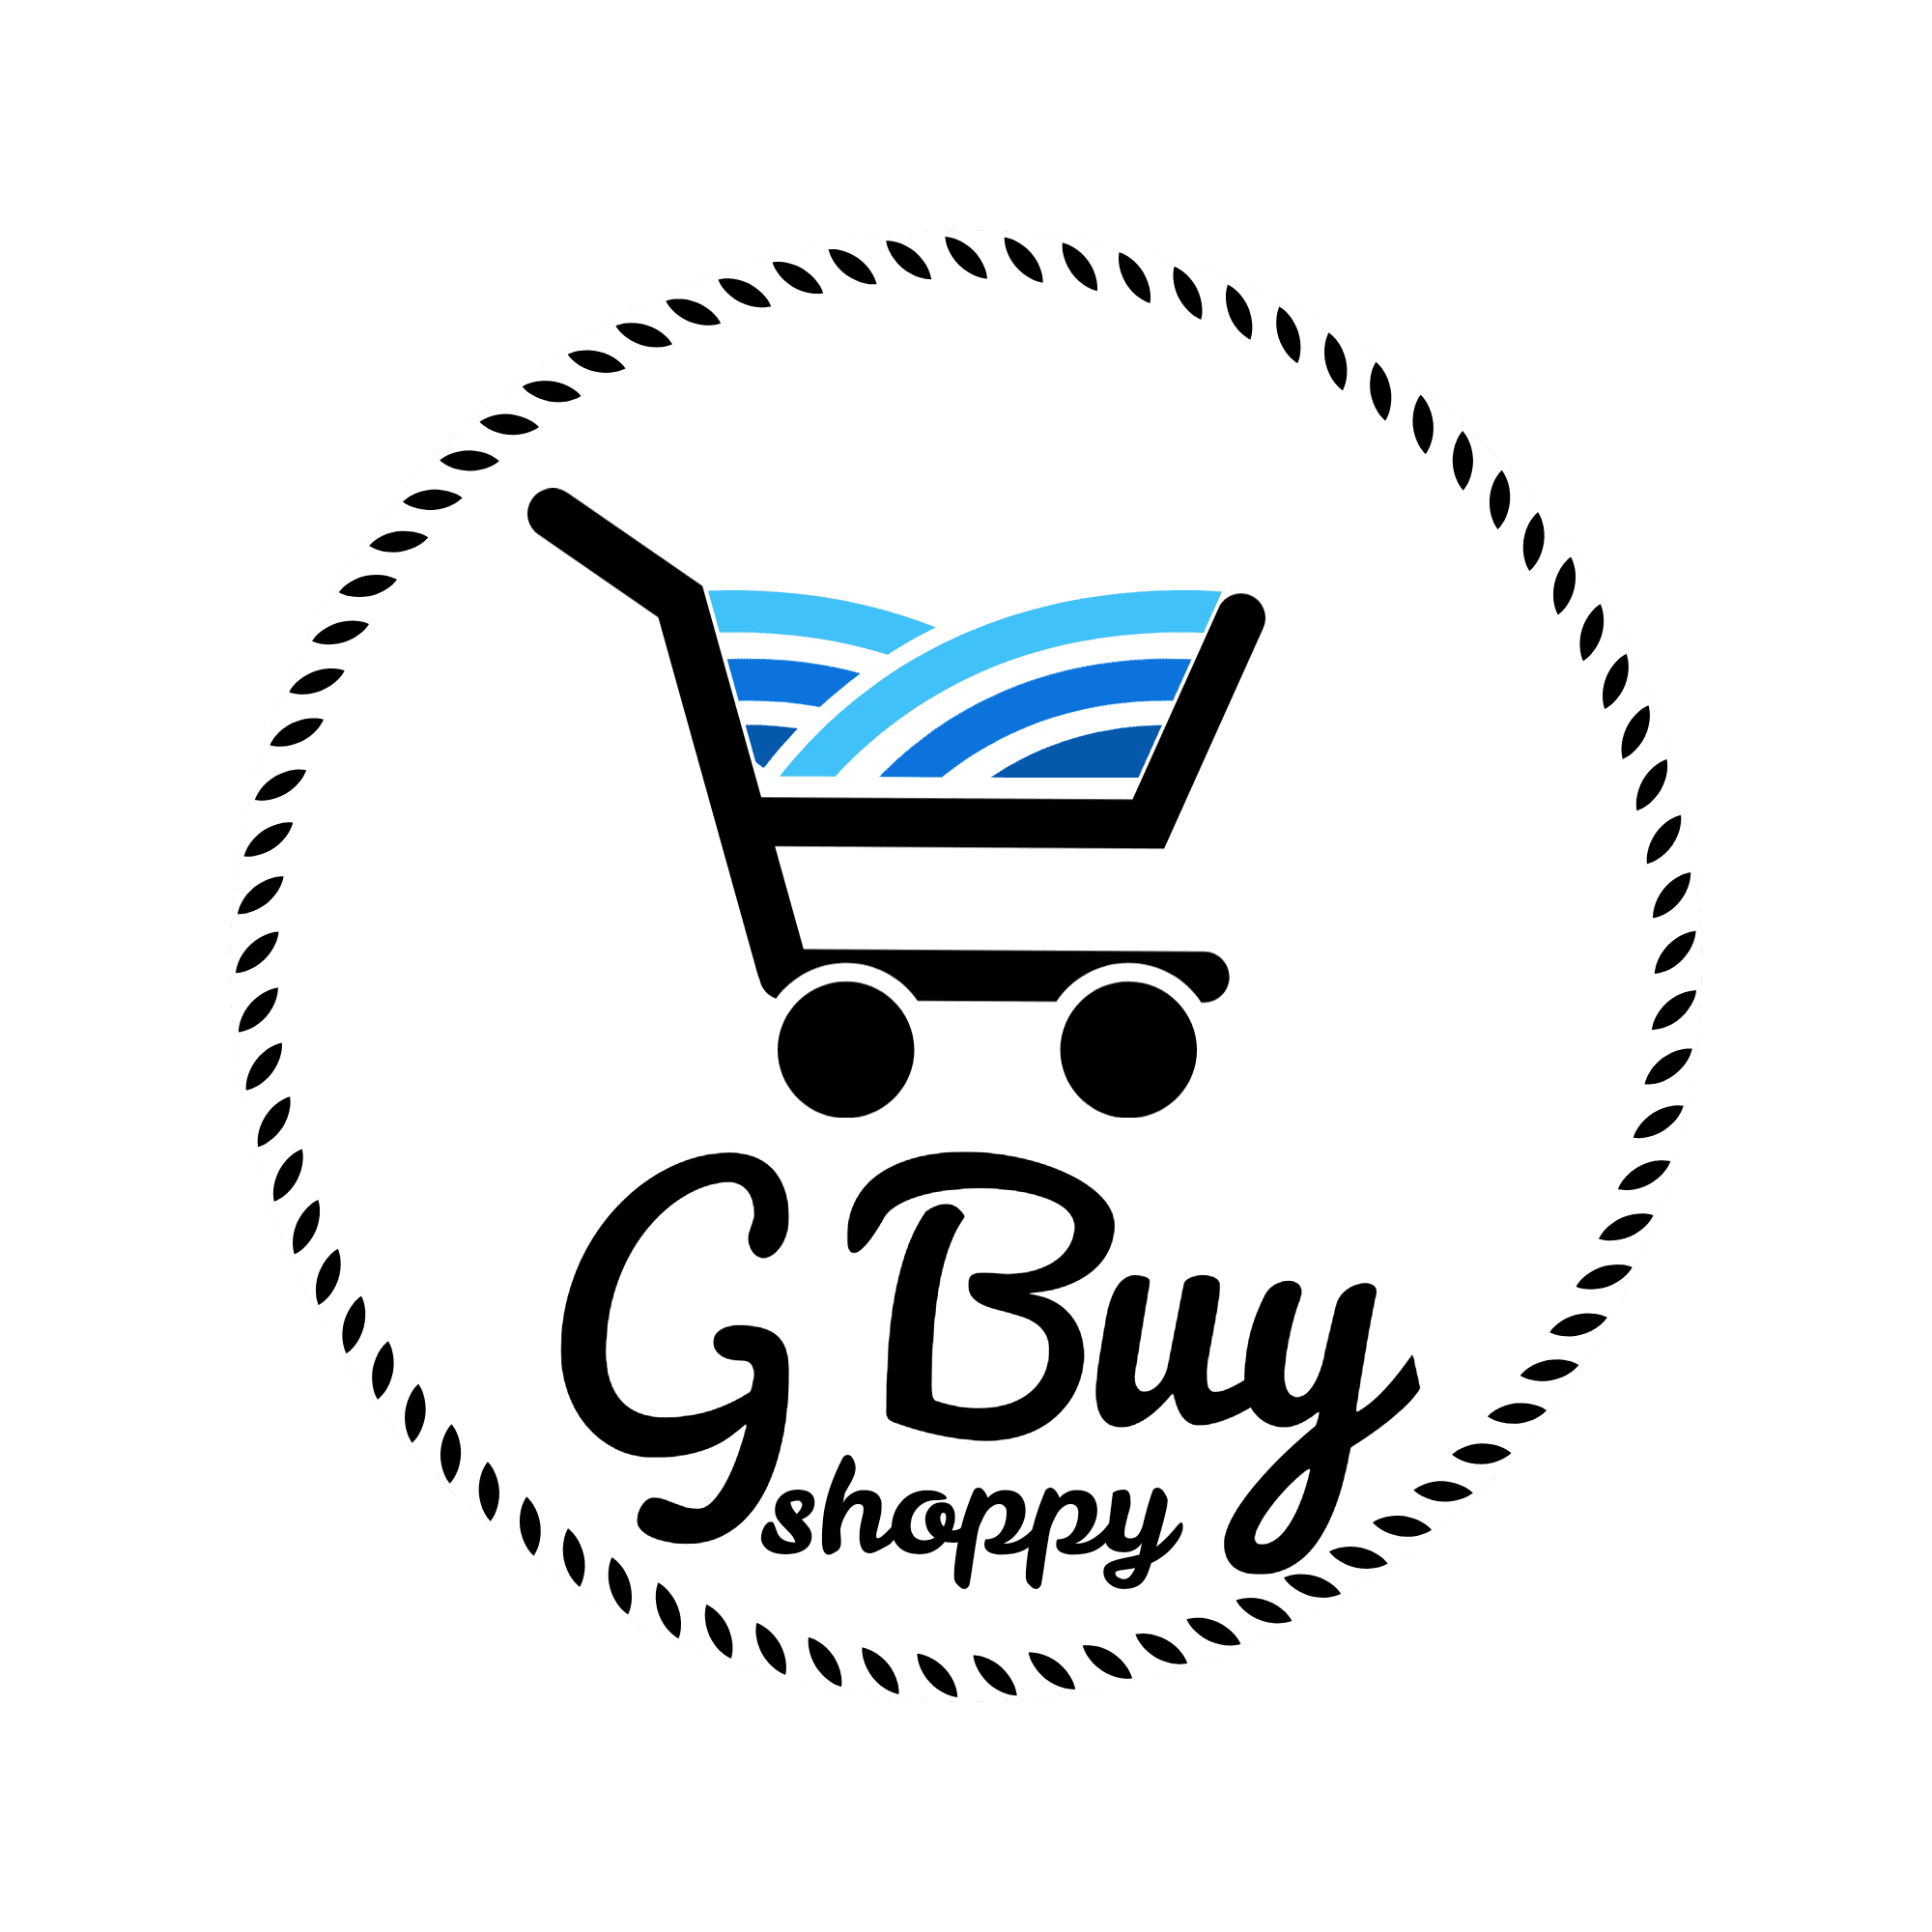 G Buy Shoppy